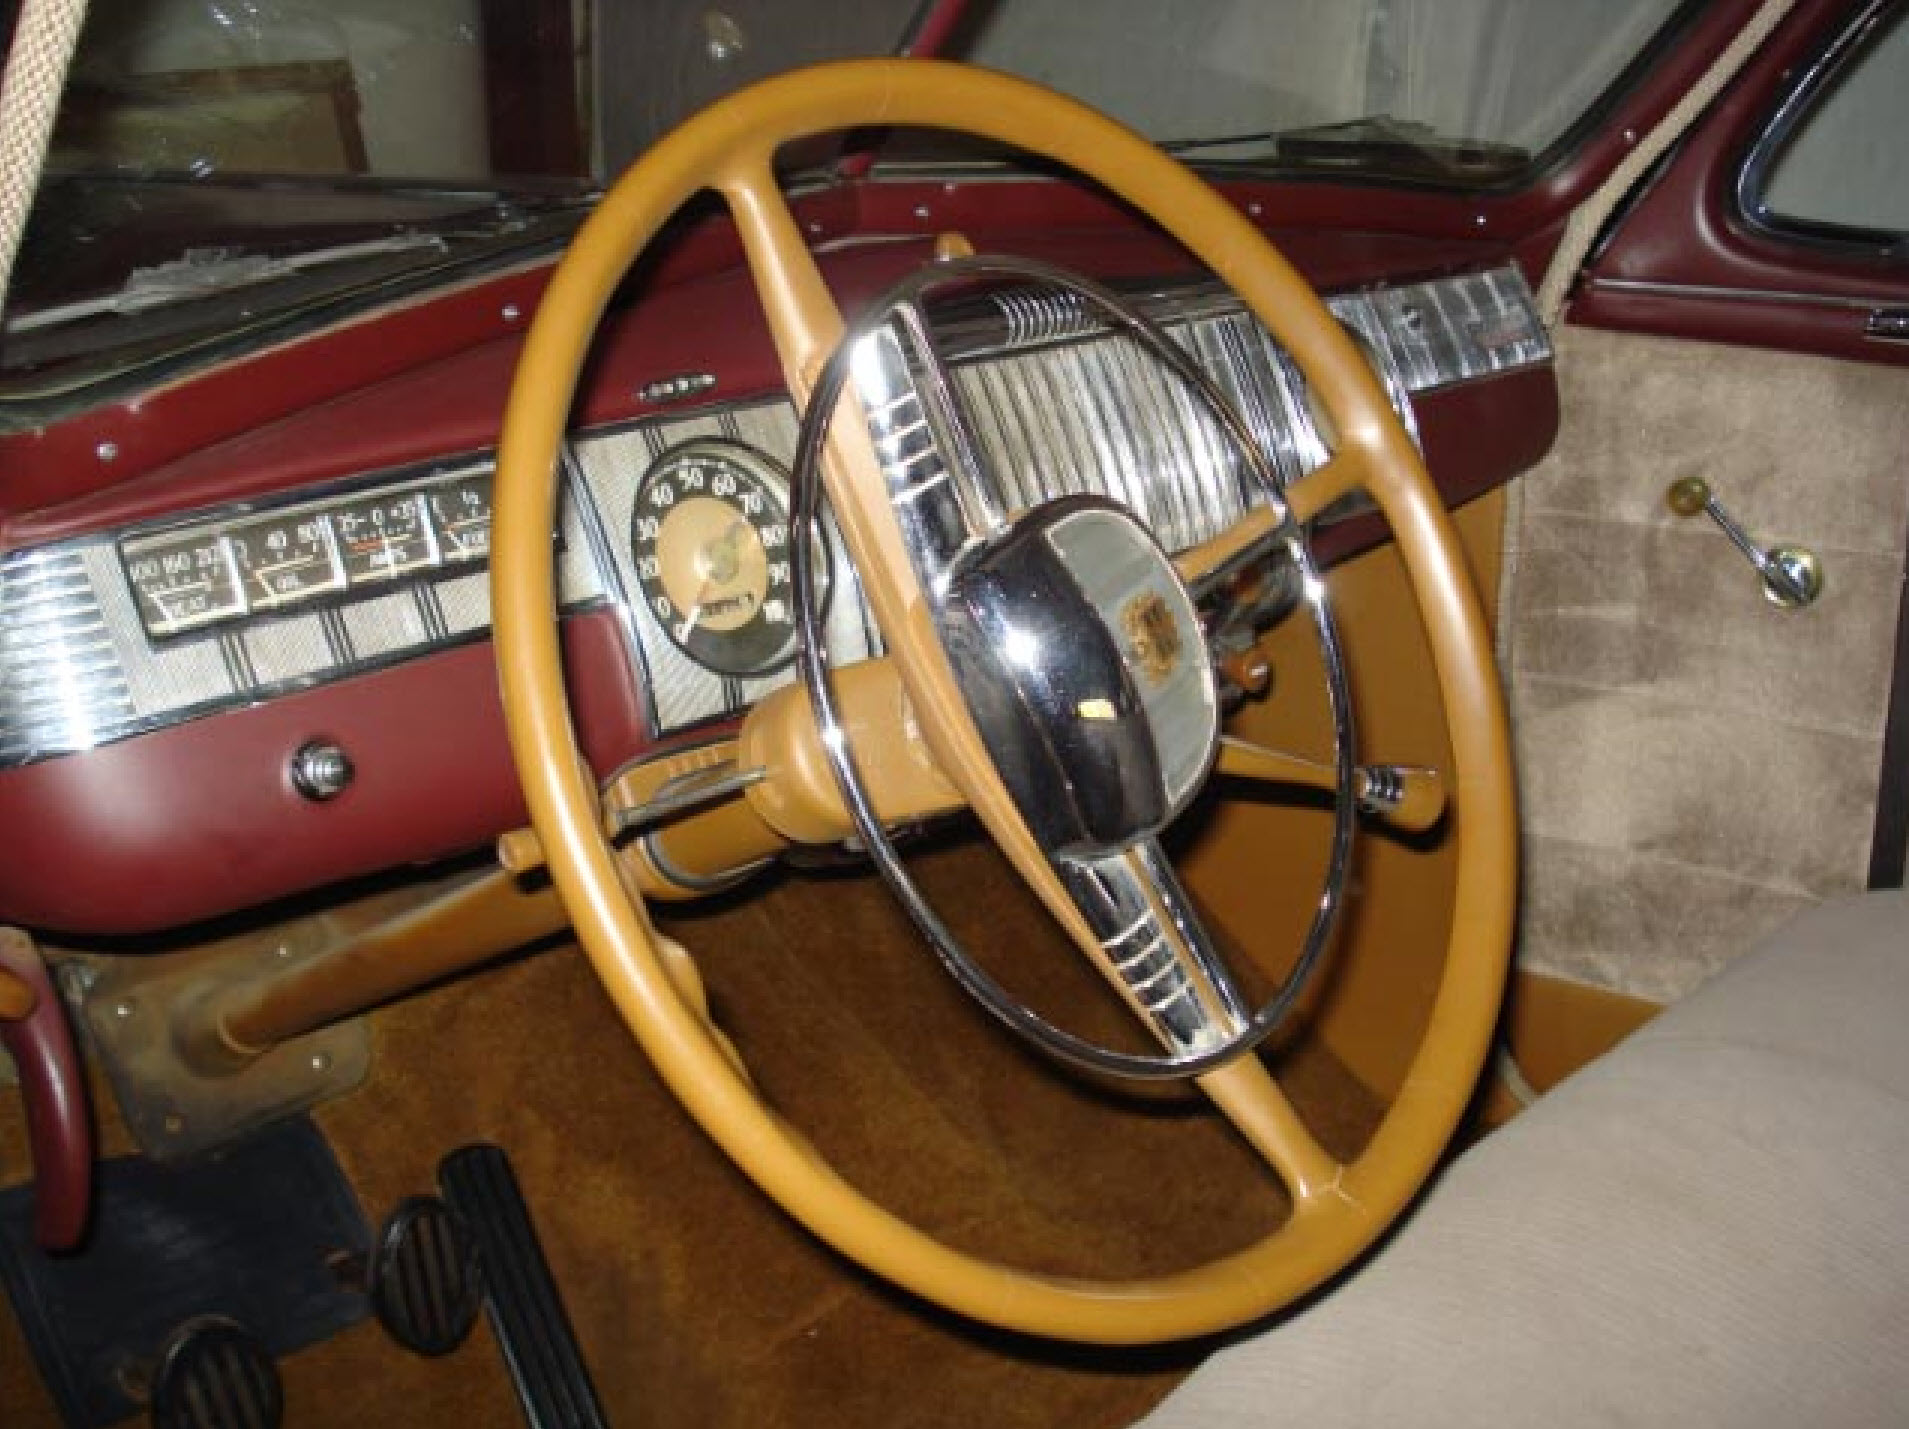 1946 Dodge Deluxe